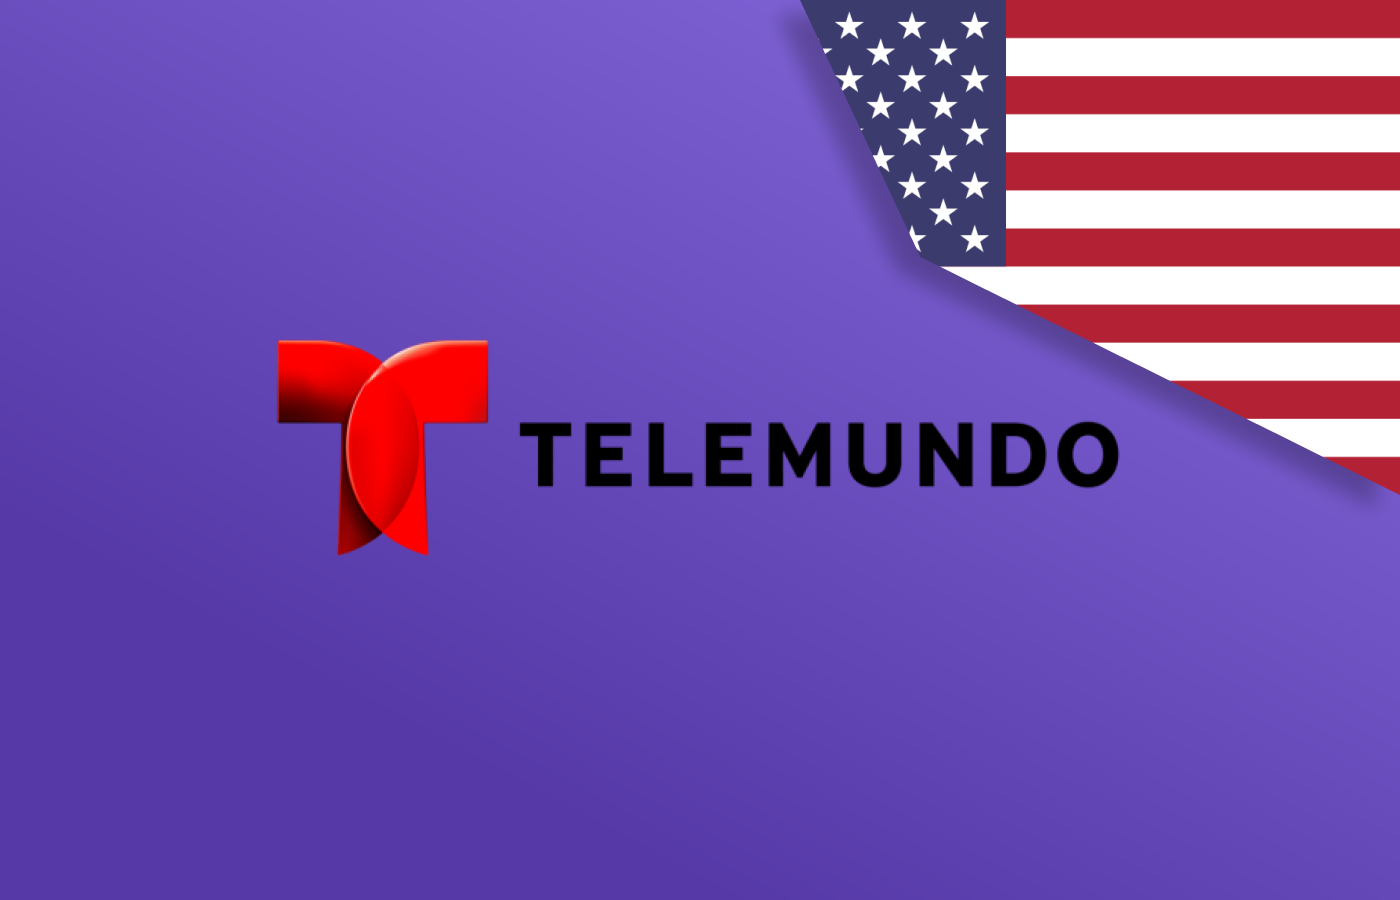 Watch Telemundo outside USA